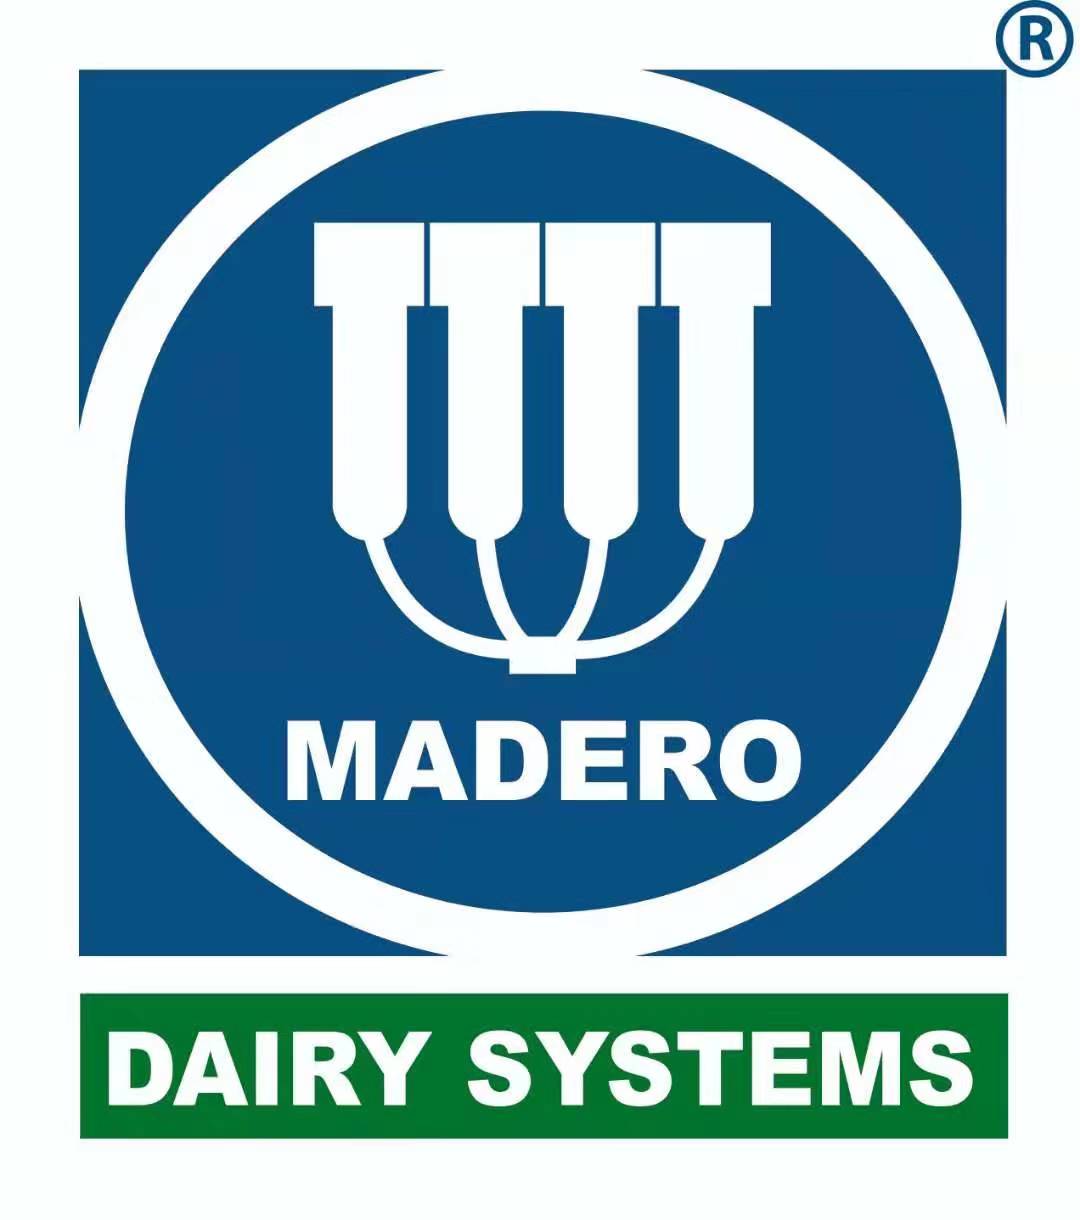 Madero dairy